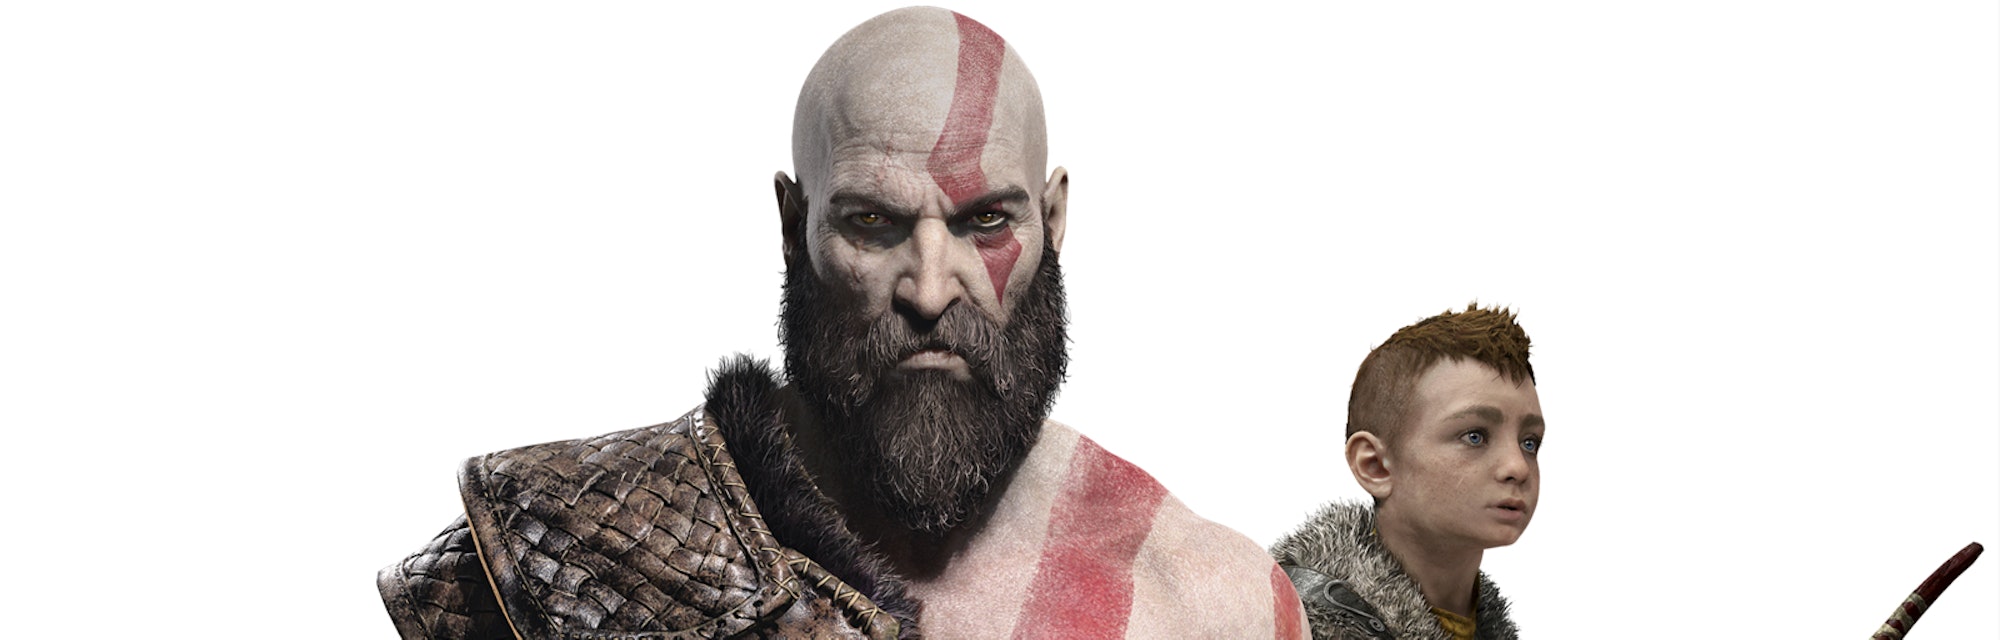 god of war 2018 kratos atreus